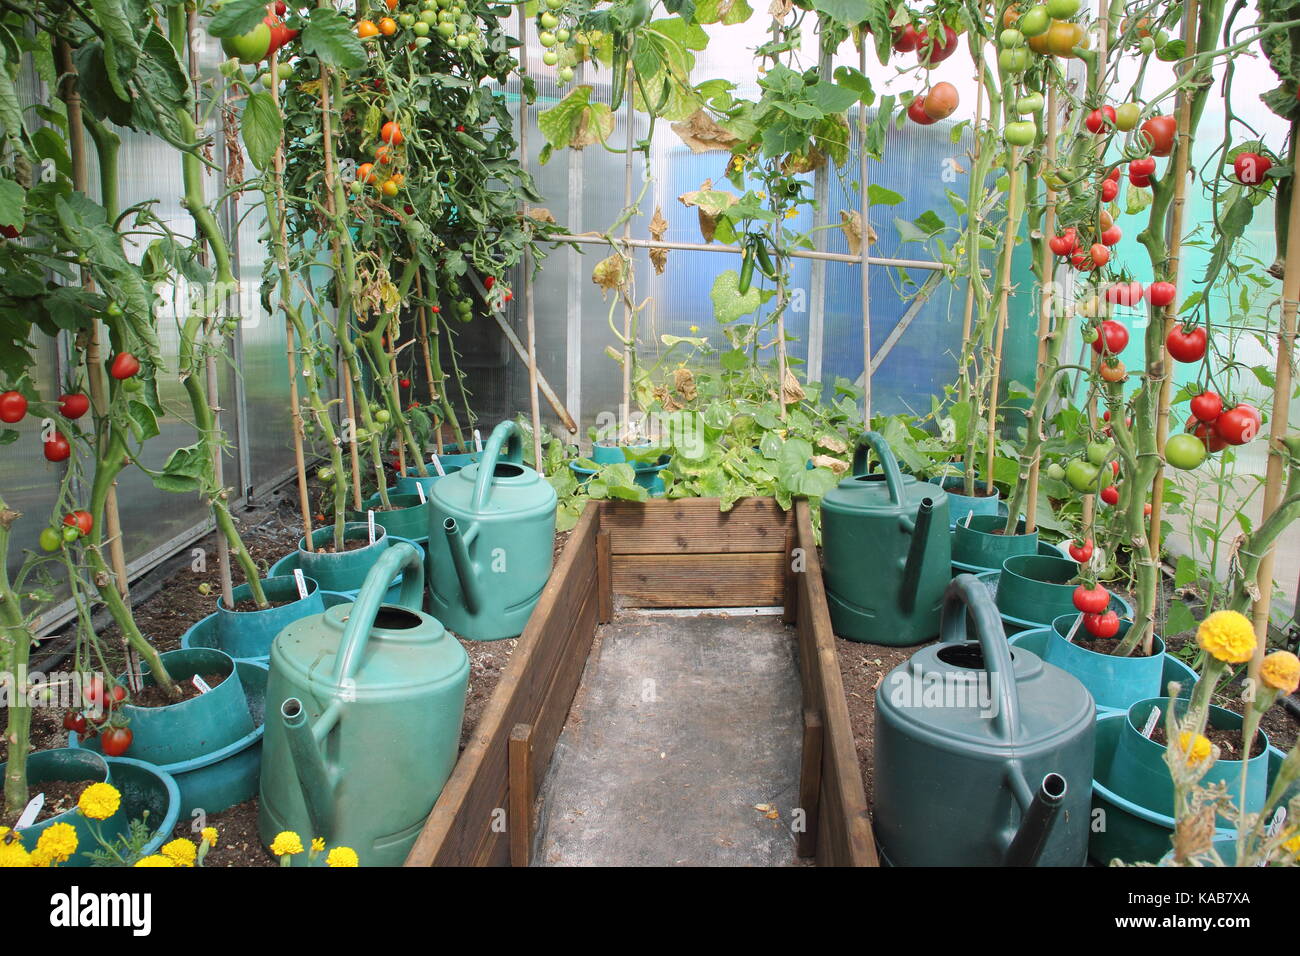 Les plants de tomates, dépouillés de leurs feuilles inférieures d'encourager une meilleure récolte, de plus en plus soulevées frontières dans une serre d'une entreprise de jardin allotissement Banque D'Images